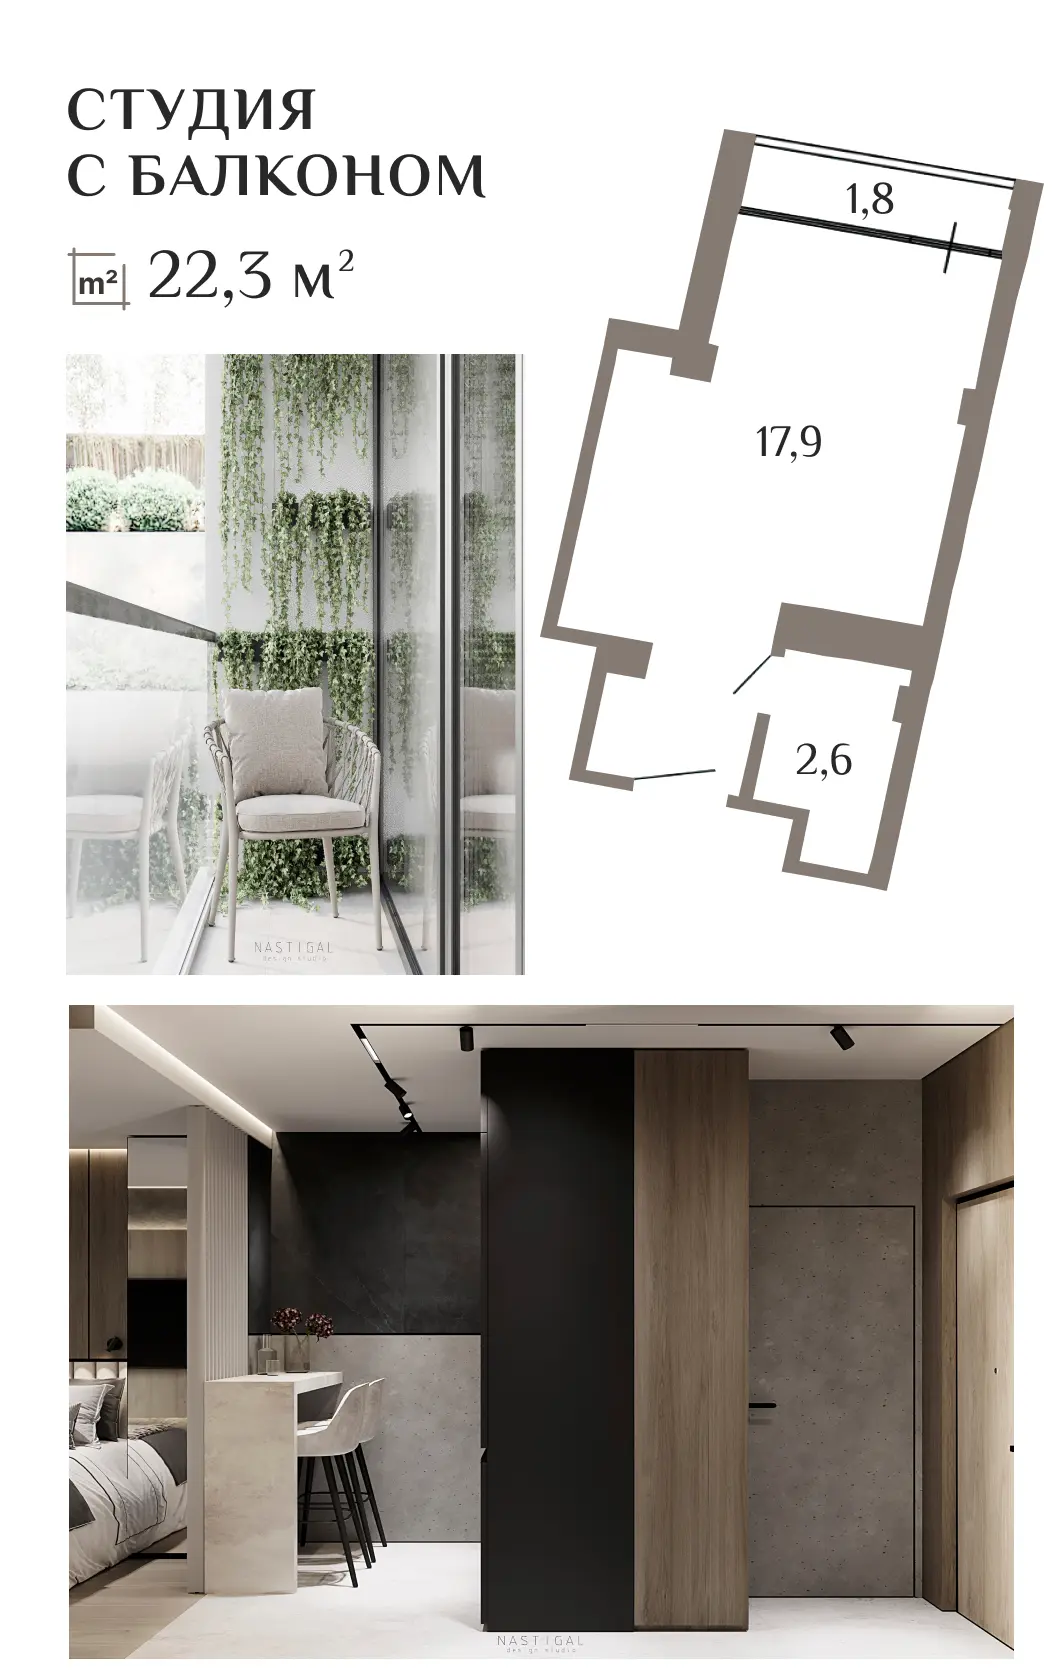 АК ГОРКА – планировка и фотографии аппартаментов - студии 22 кв.м.